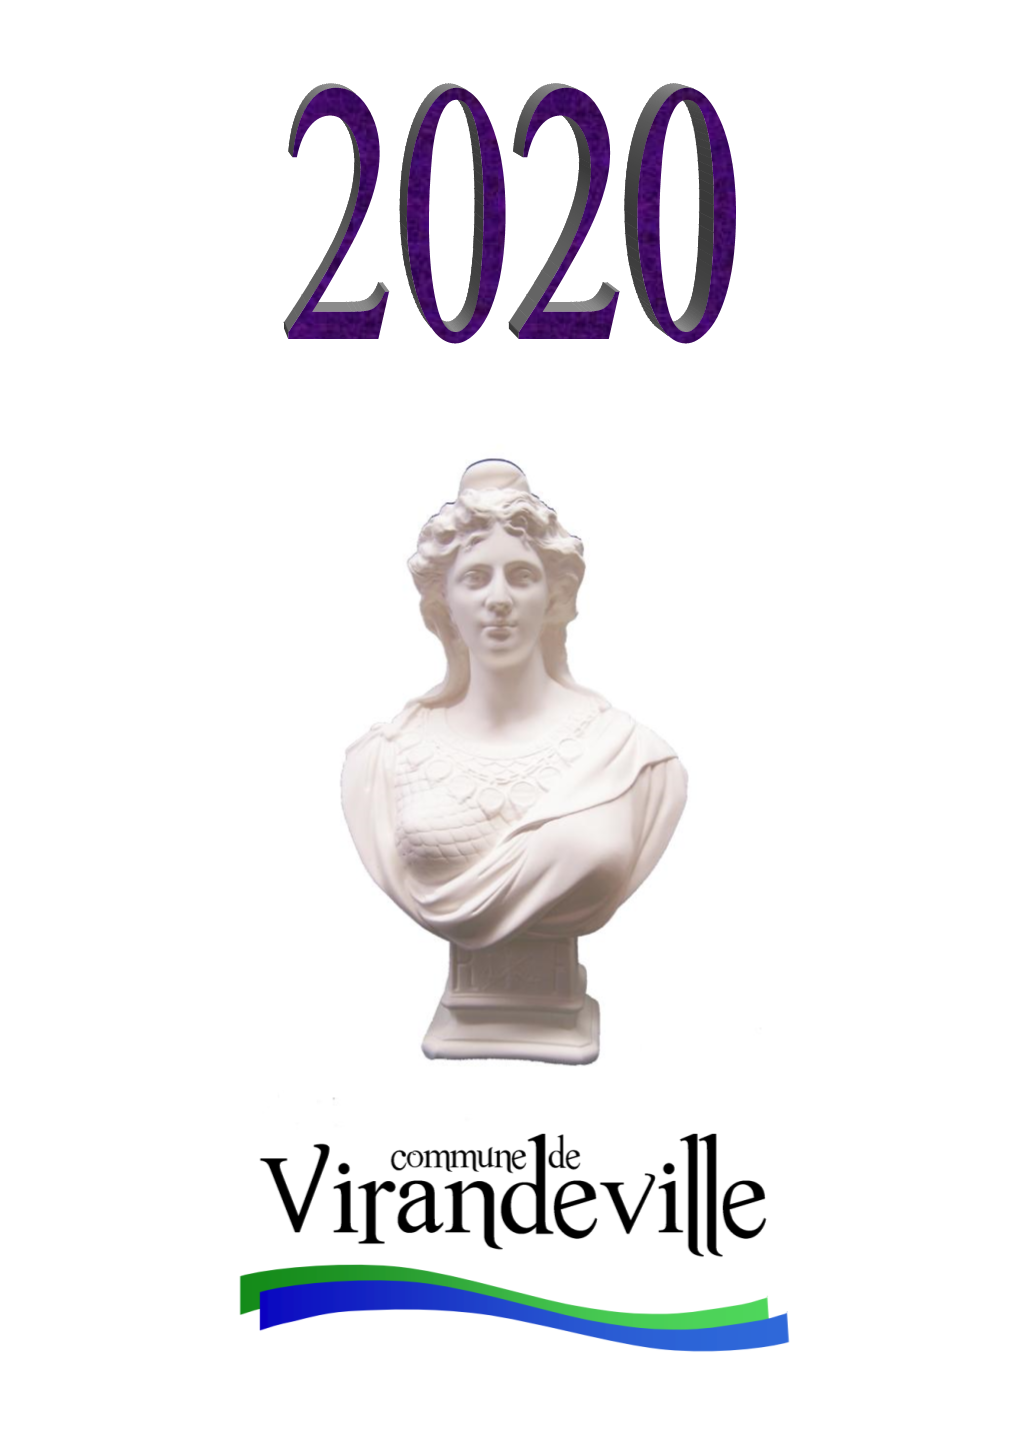 Bulletin Municipal 2020